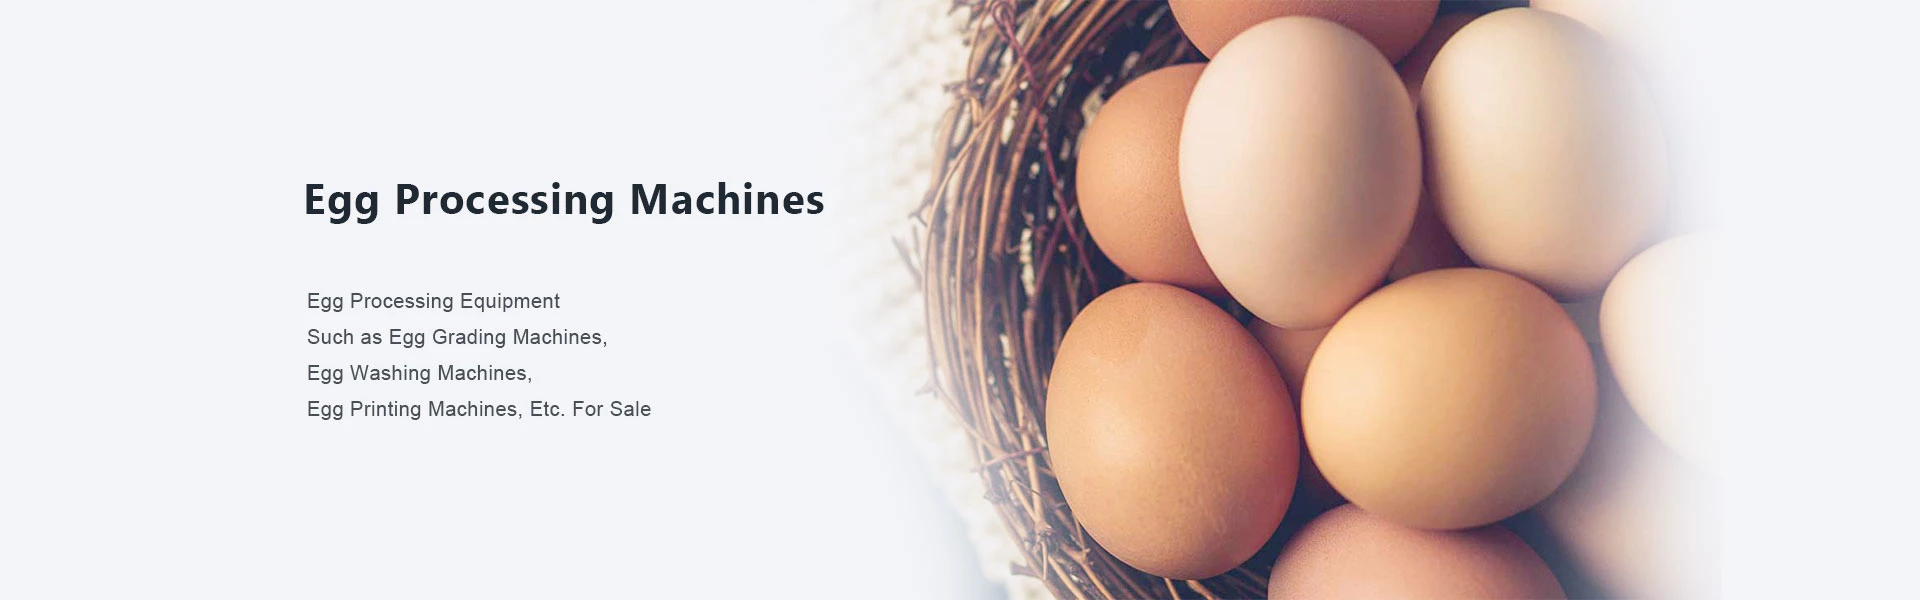 máquinas de ovos